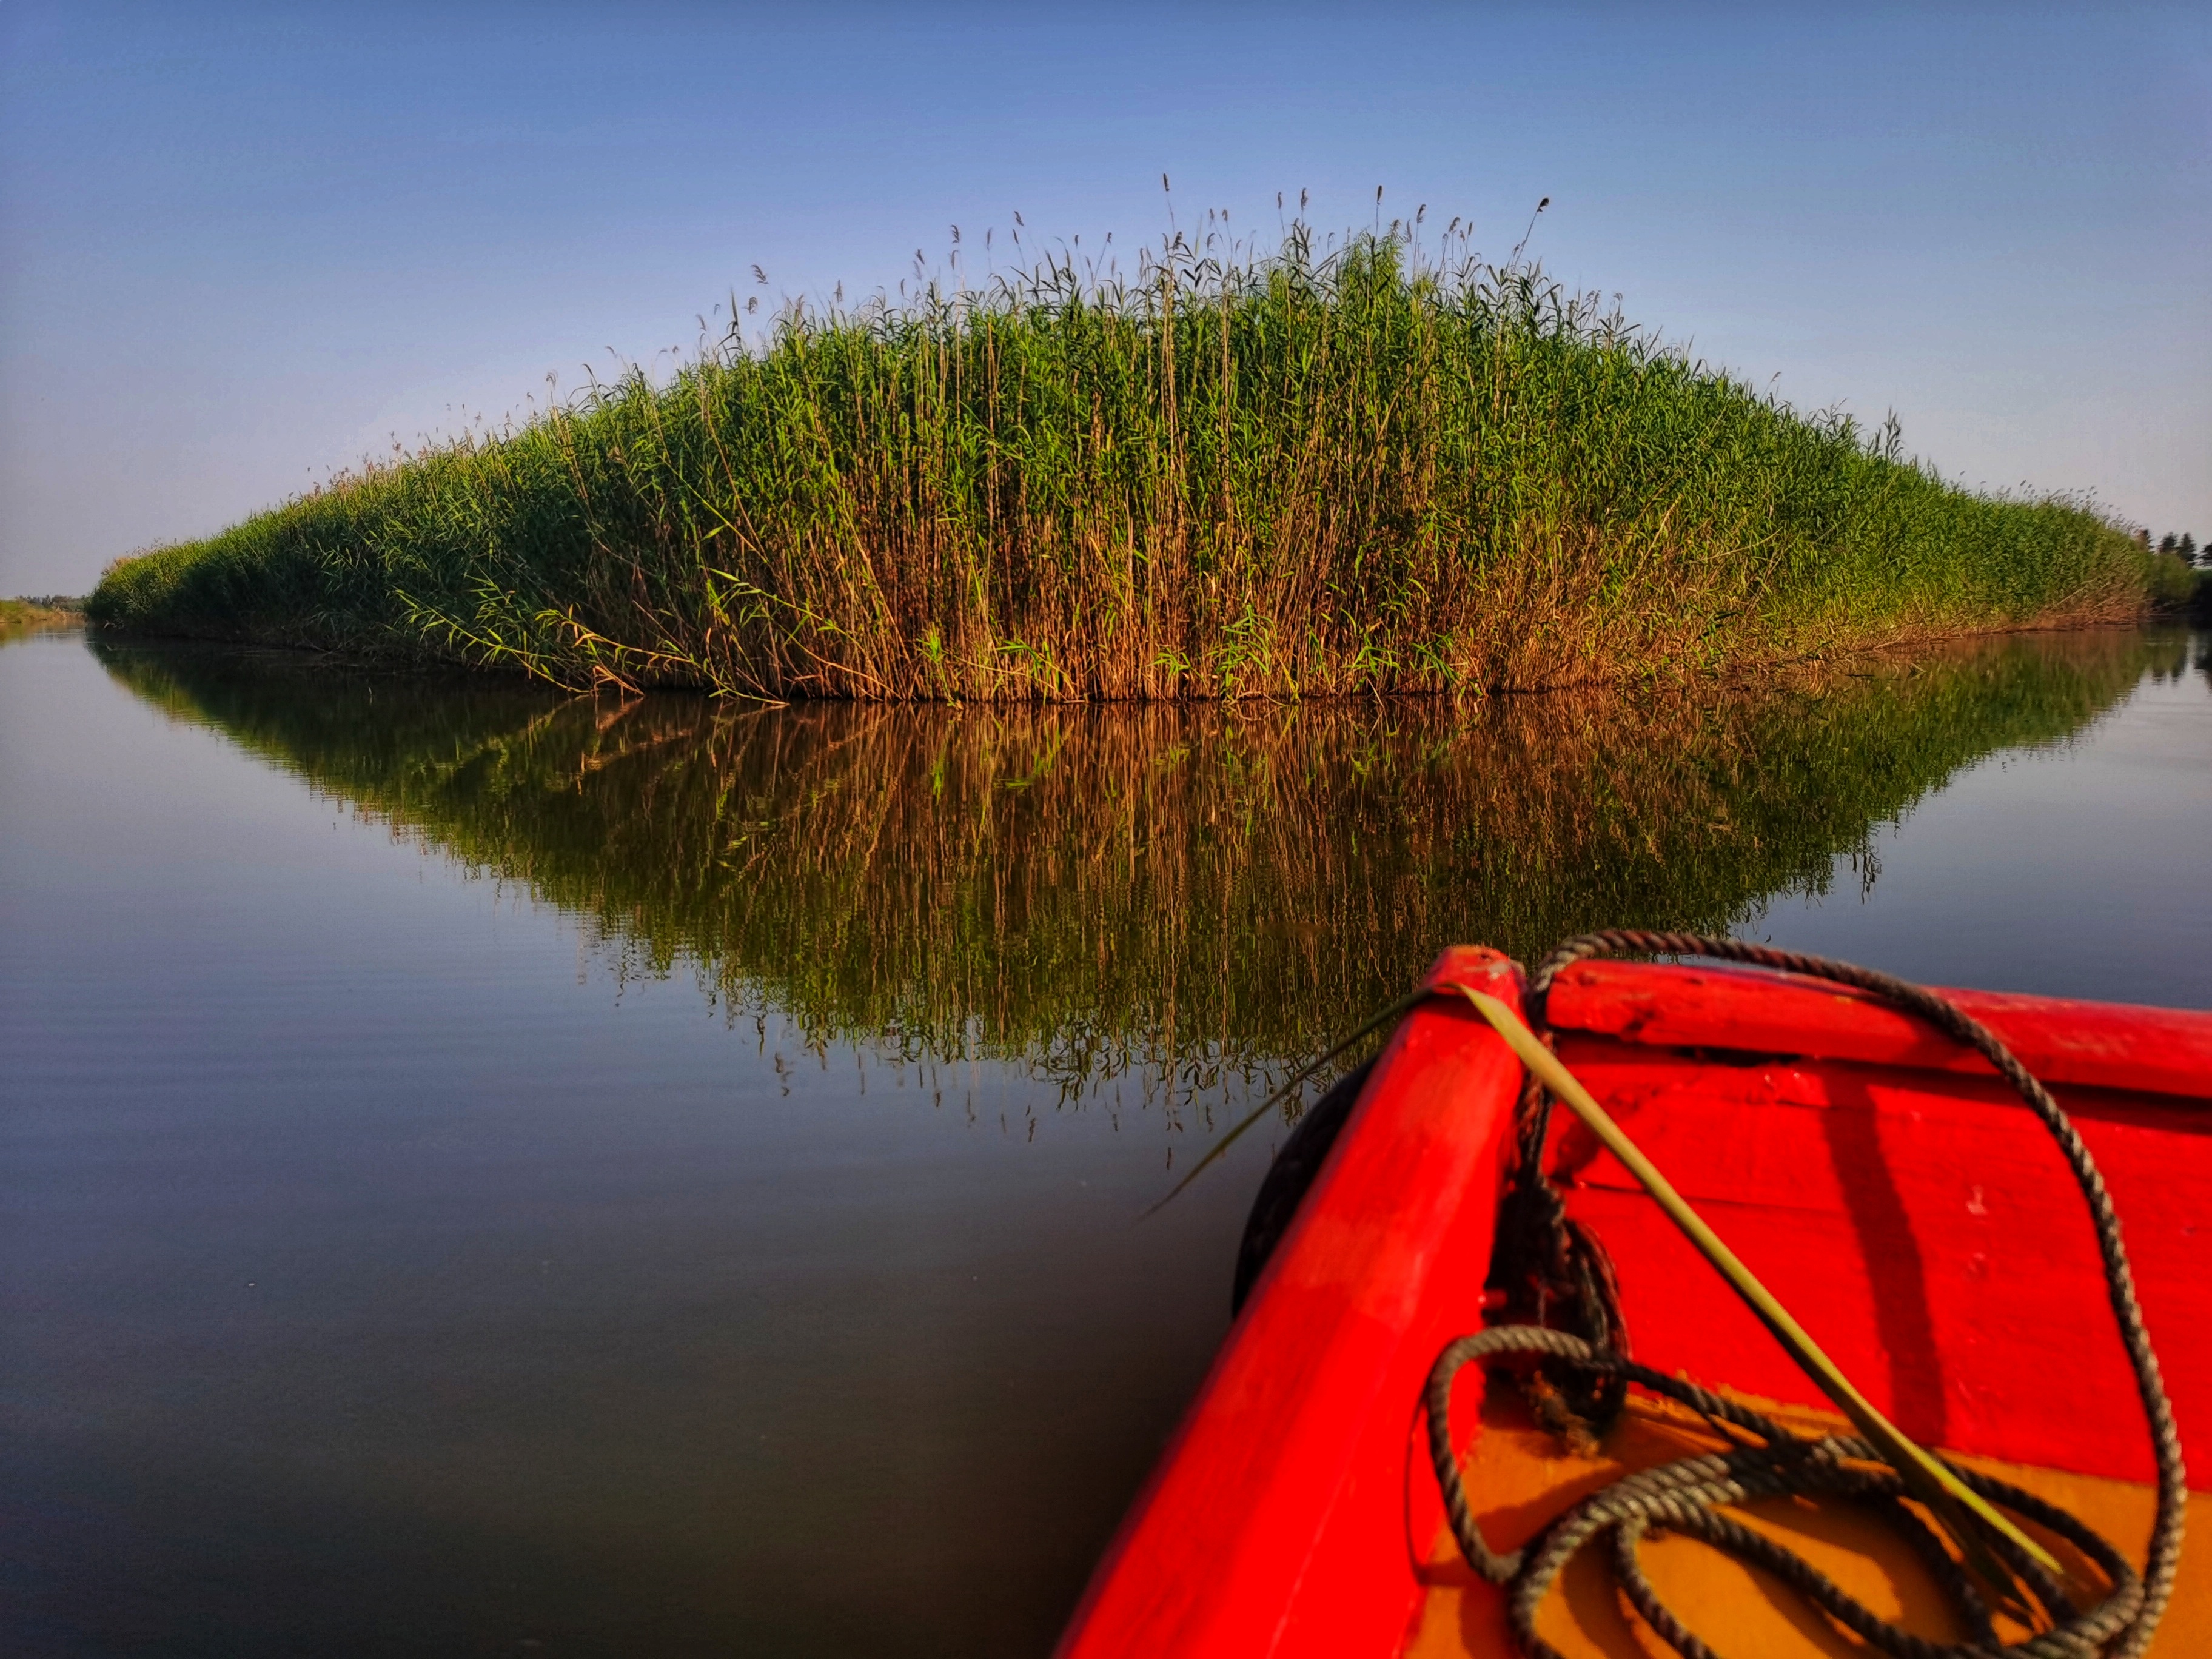 高邮湖芦苇荡湿地公园仲夏的芦苇已经长成密密芦荡,仿佛一座座绿墙砌